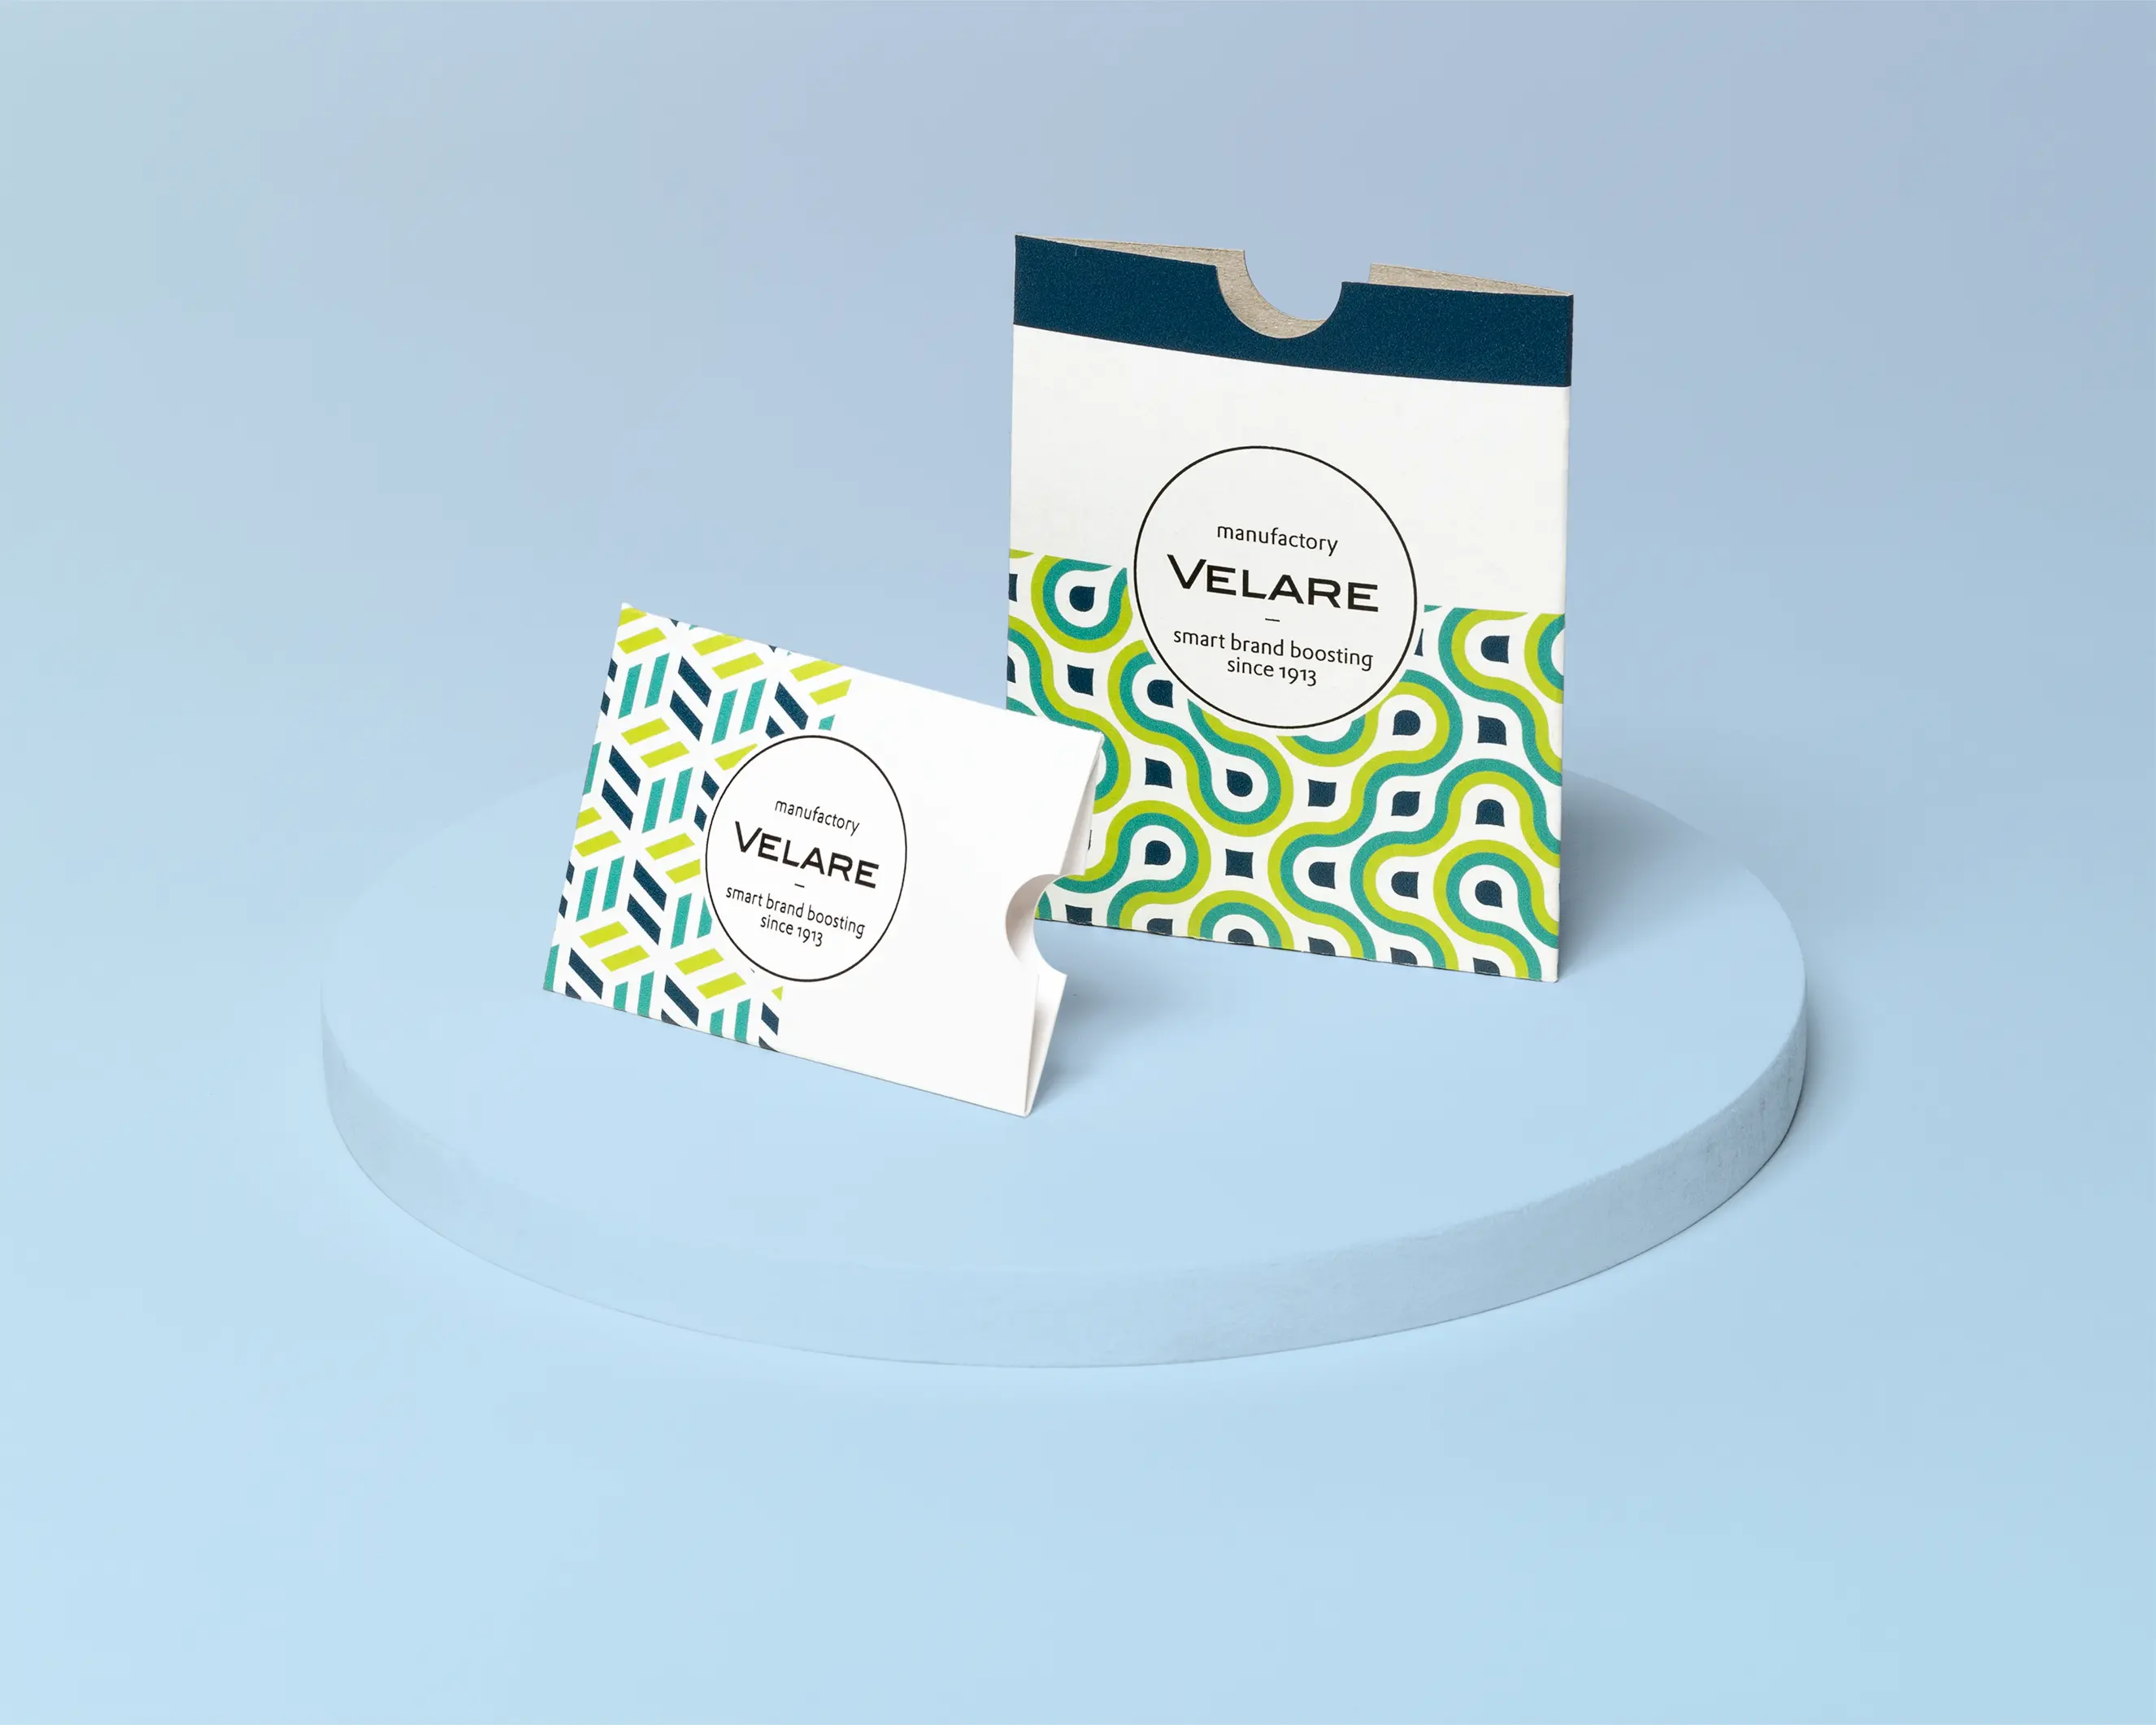 Kartenhülle ohne Verschluss, zwei Verpackungen auf dem Podest, blauer Hintergrund